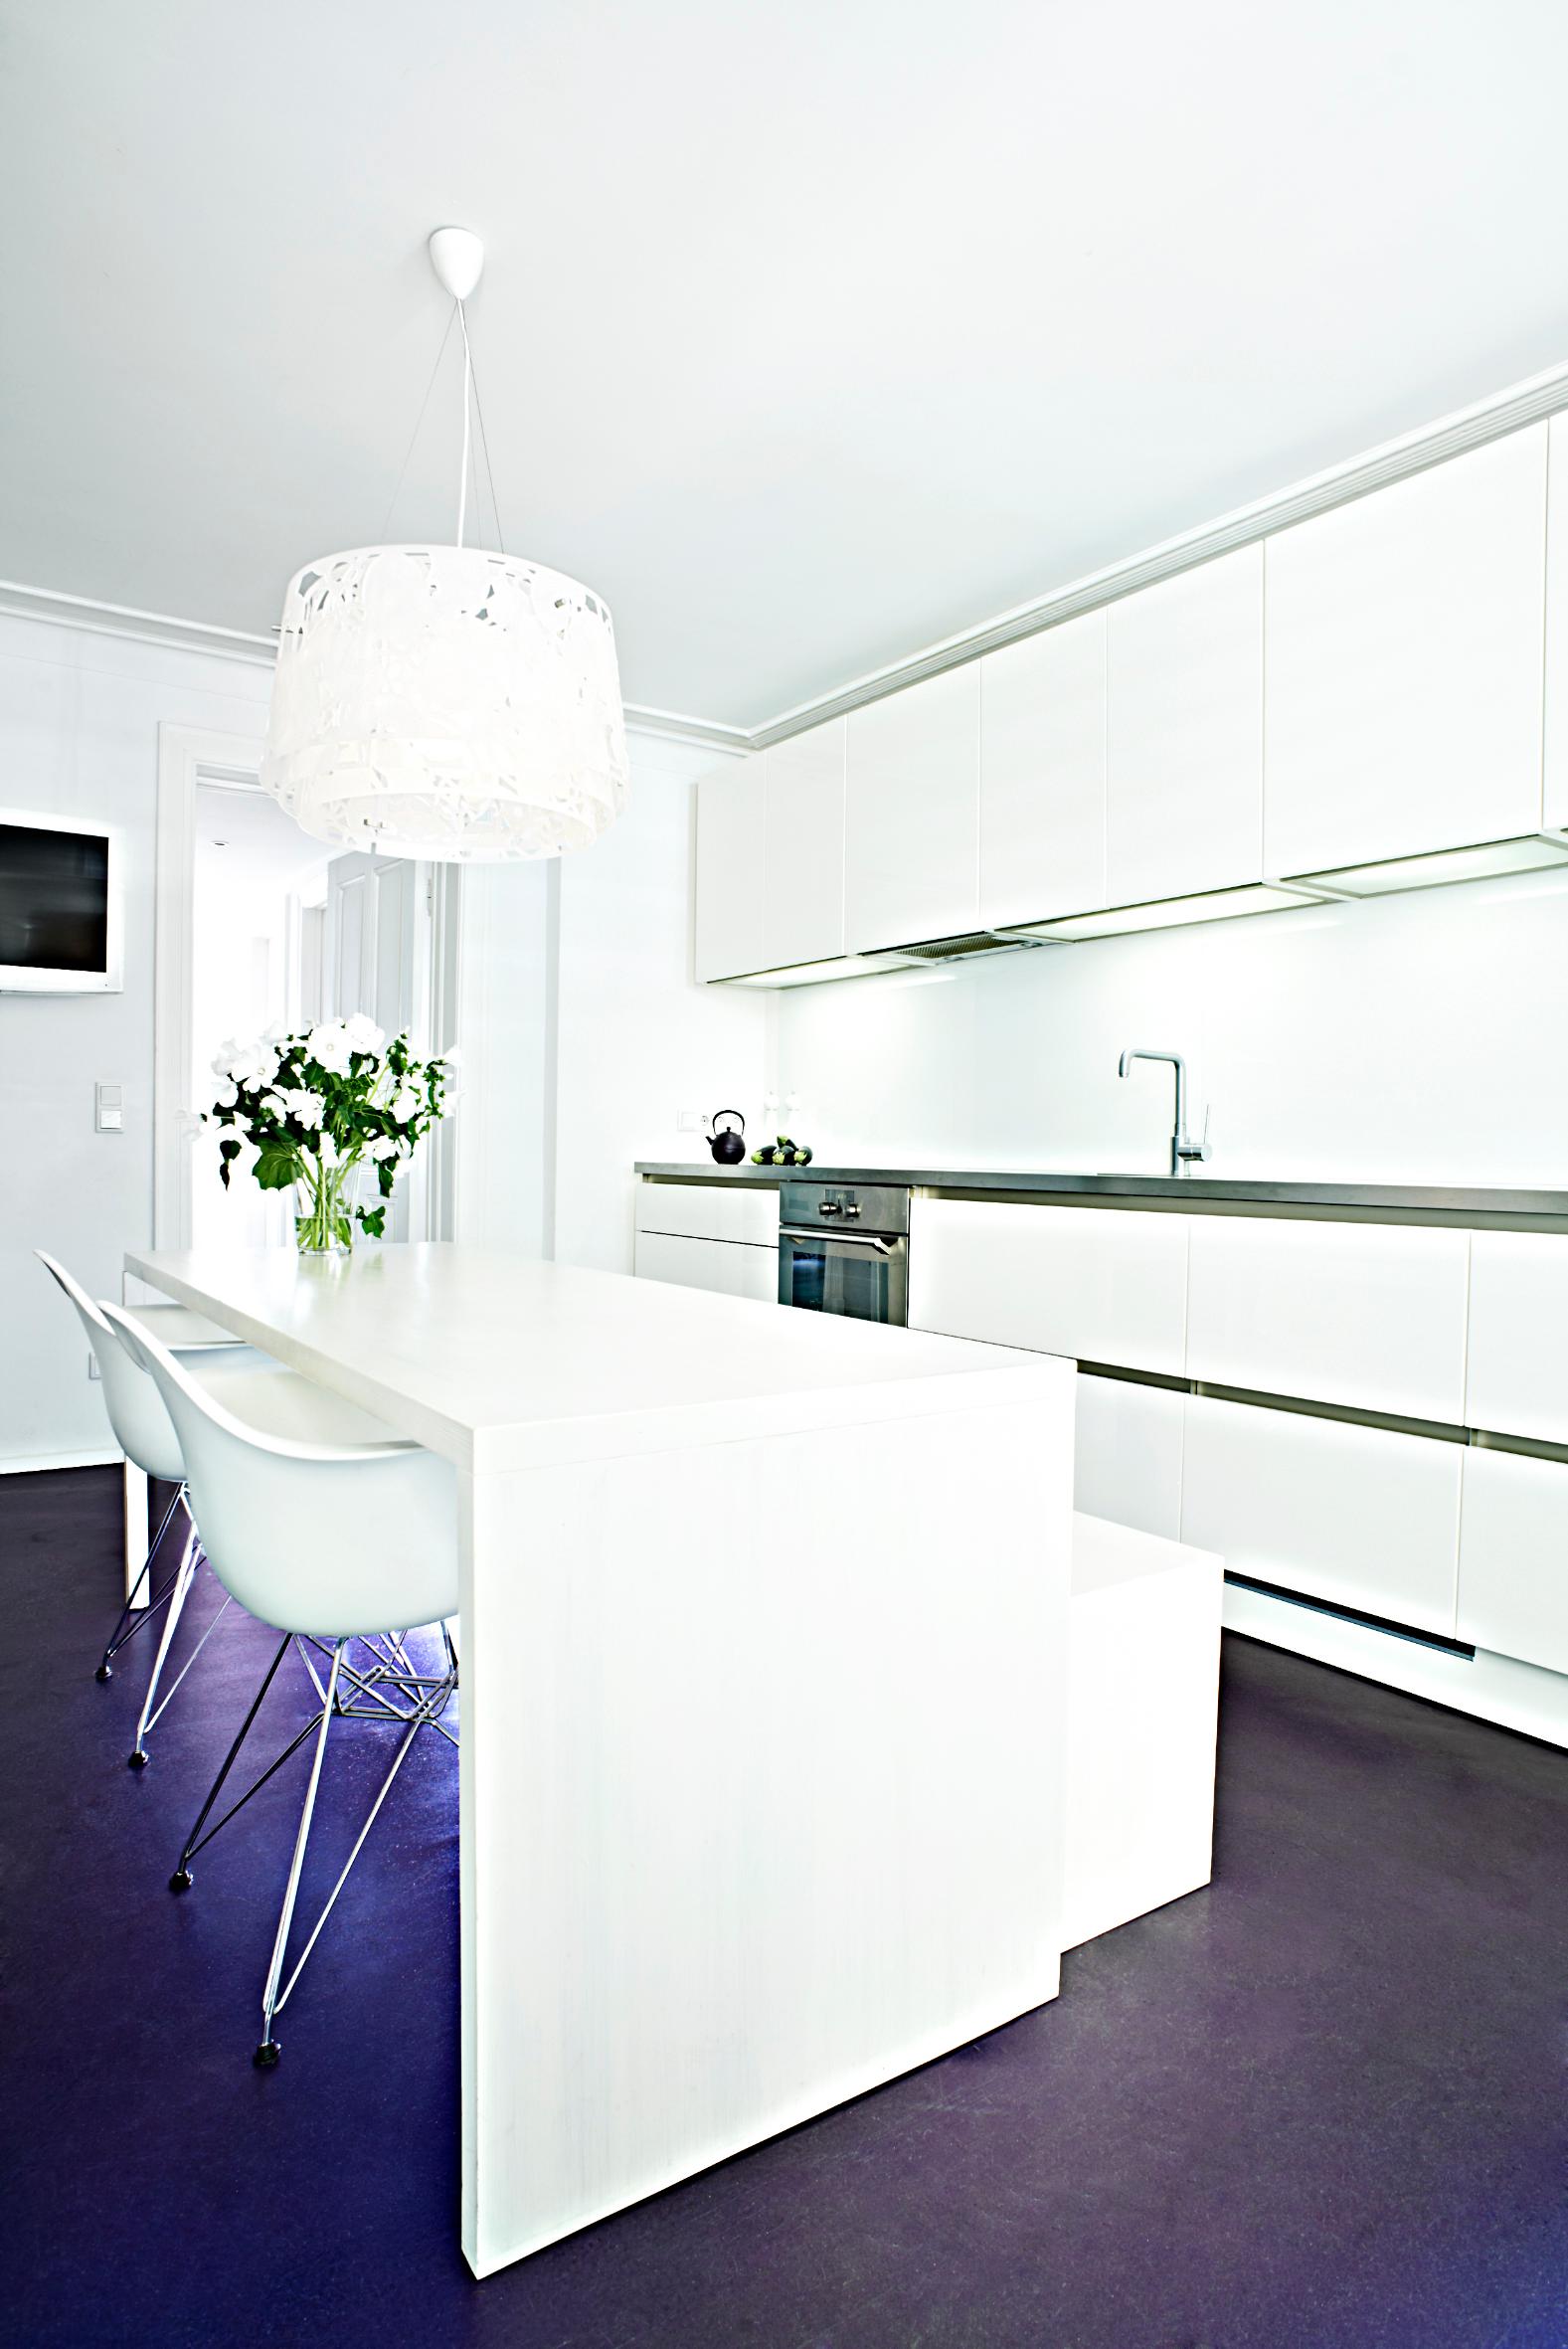 Wohnküche in weiß Hochglanz lackiert, grifflos, mit Edelstahlarbeitsplatte #weißerküchenschrank #küchentisch ©burmester photography